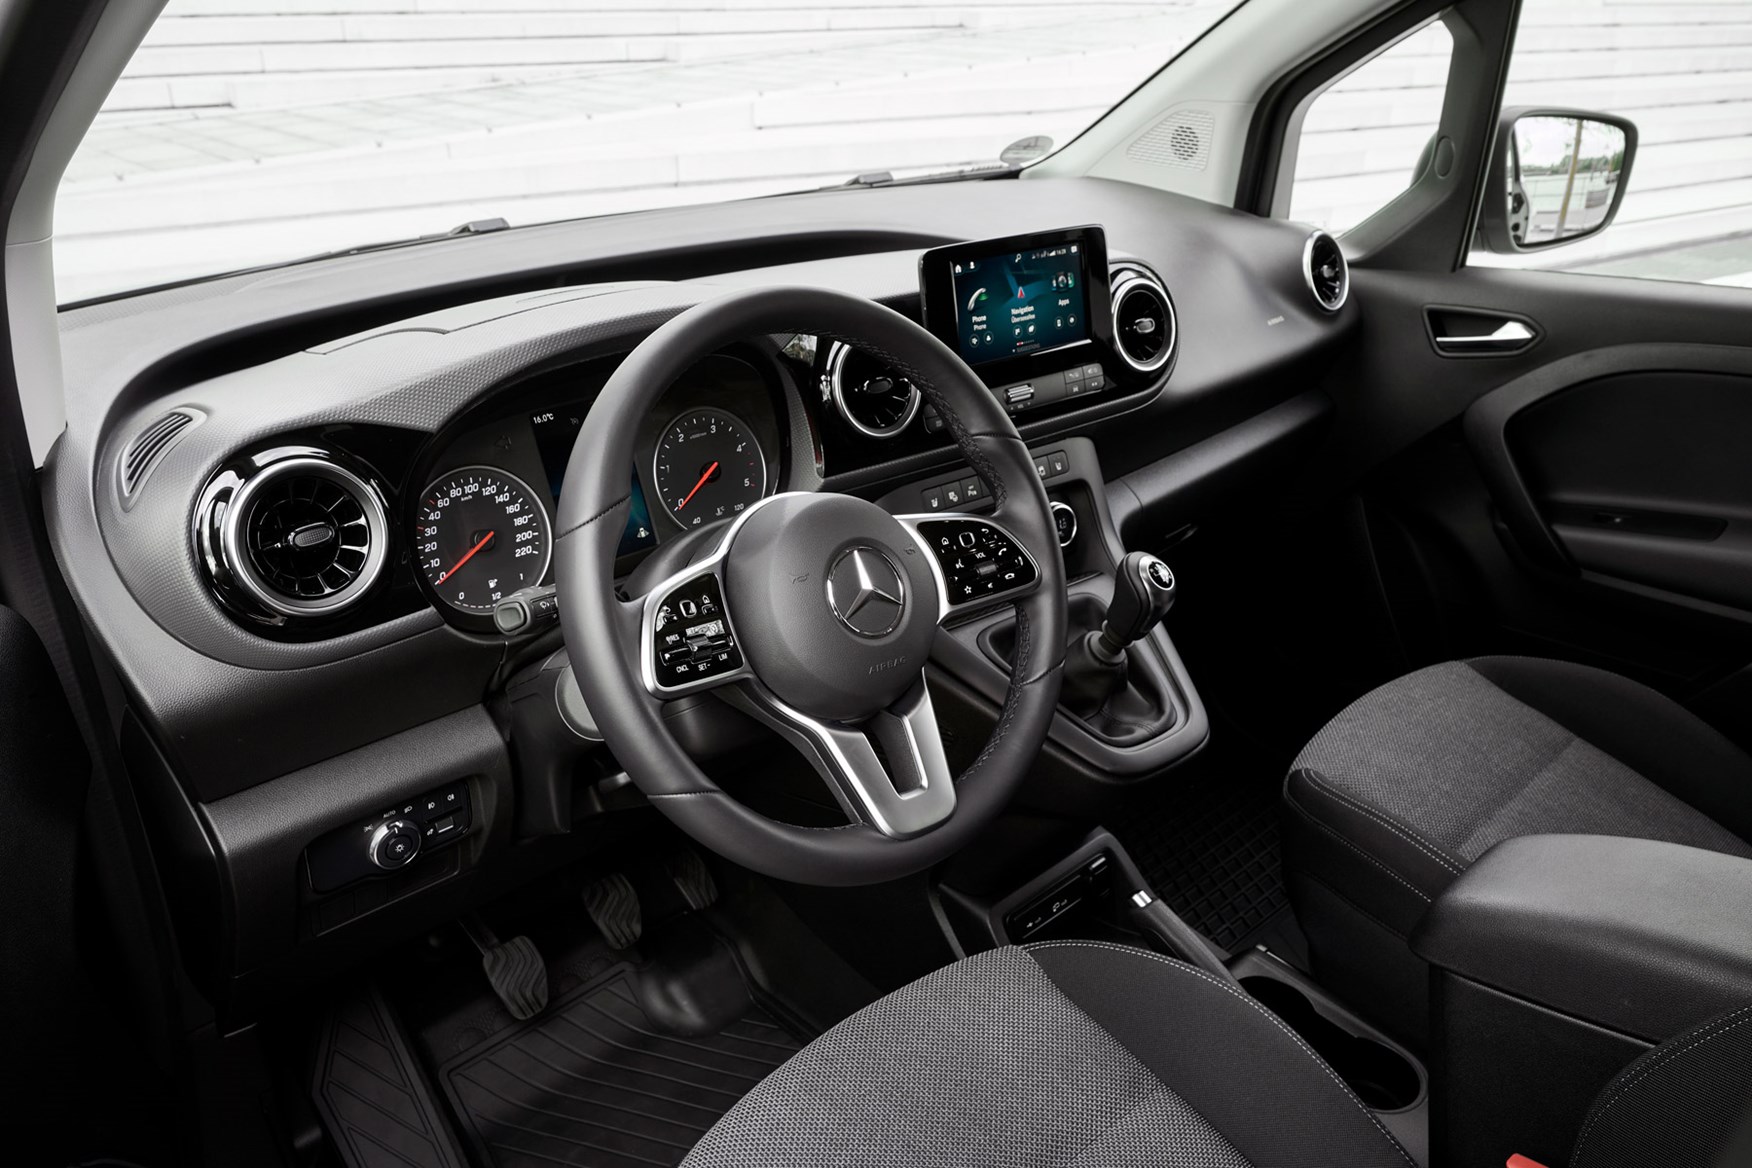 Mercedes-Benz Citan review - cab interior